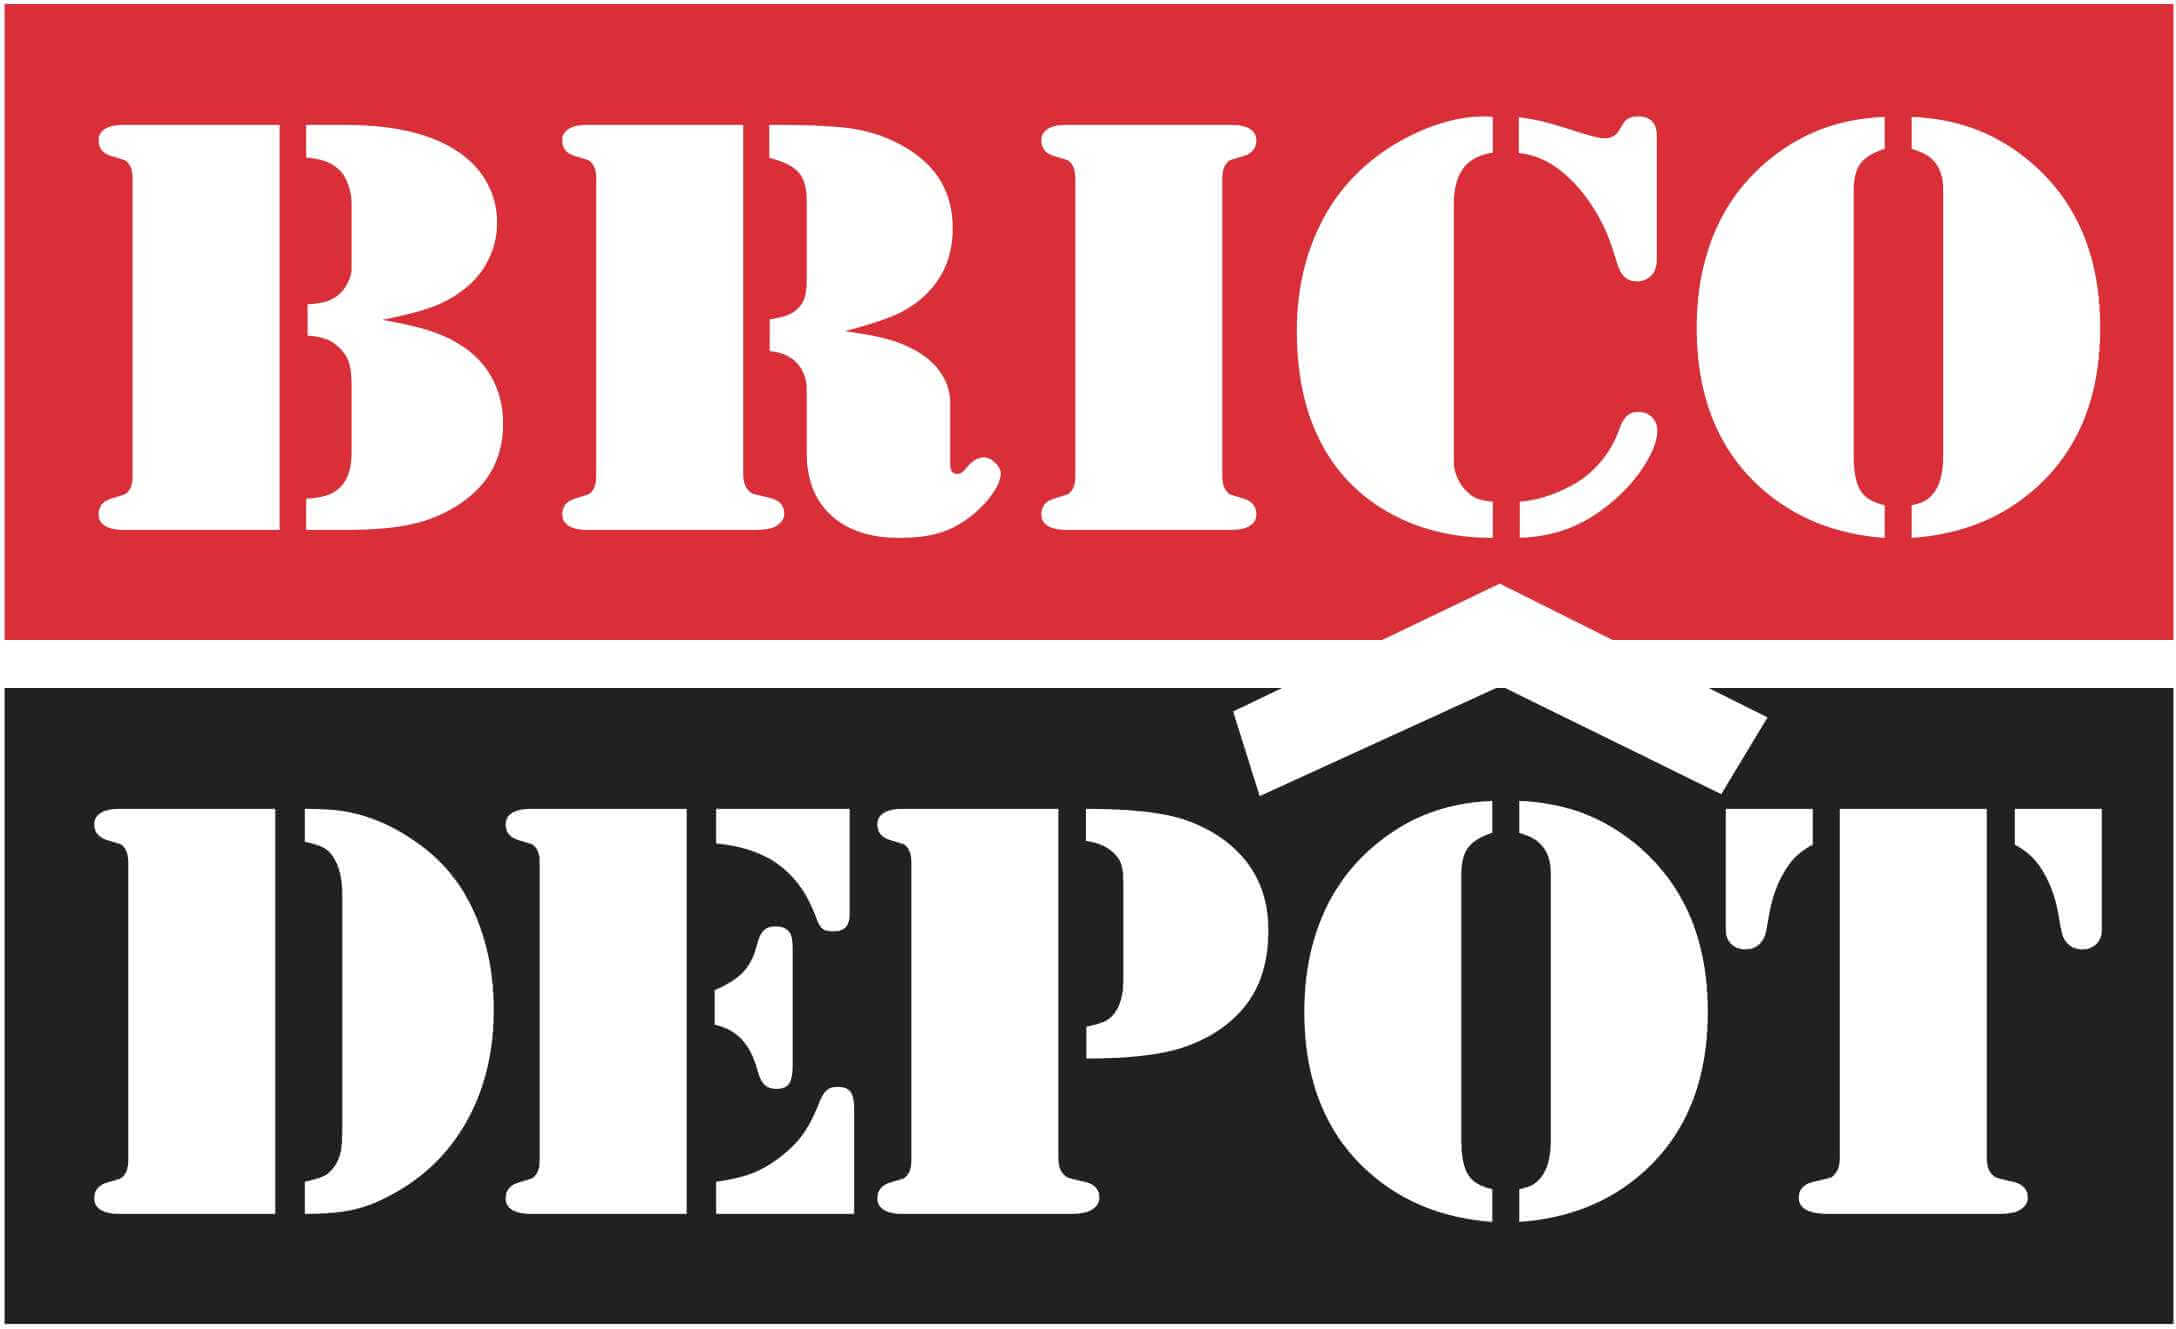 Fenetre Brico Depot Retrouvez Tous Les Produits Brico Depot